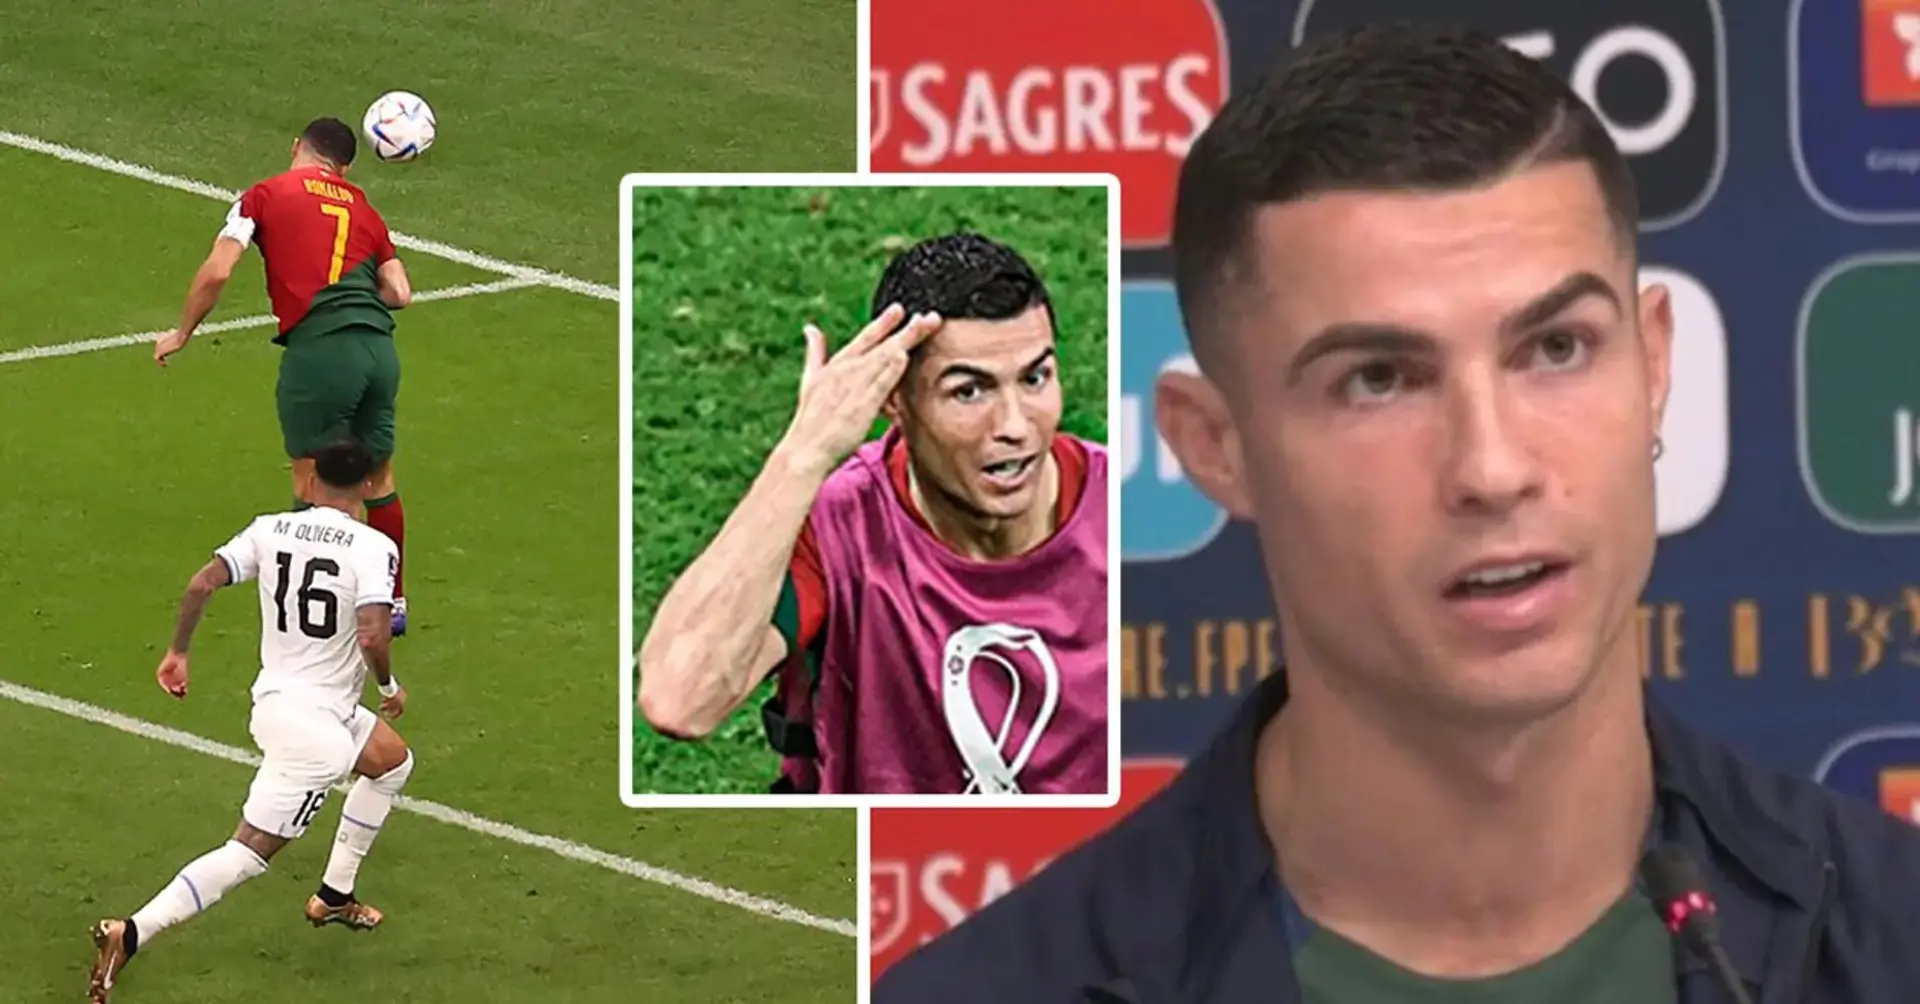 Ronaldo war kürzlich sehr unzufrieden damit, dass das erste Tor gegen Uruguay nicht ihm zugeschrieben wurde. Wisst ihr aber, was er über Tore für die Nationalelf gesagt hat?